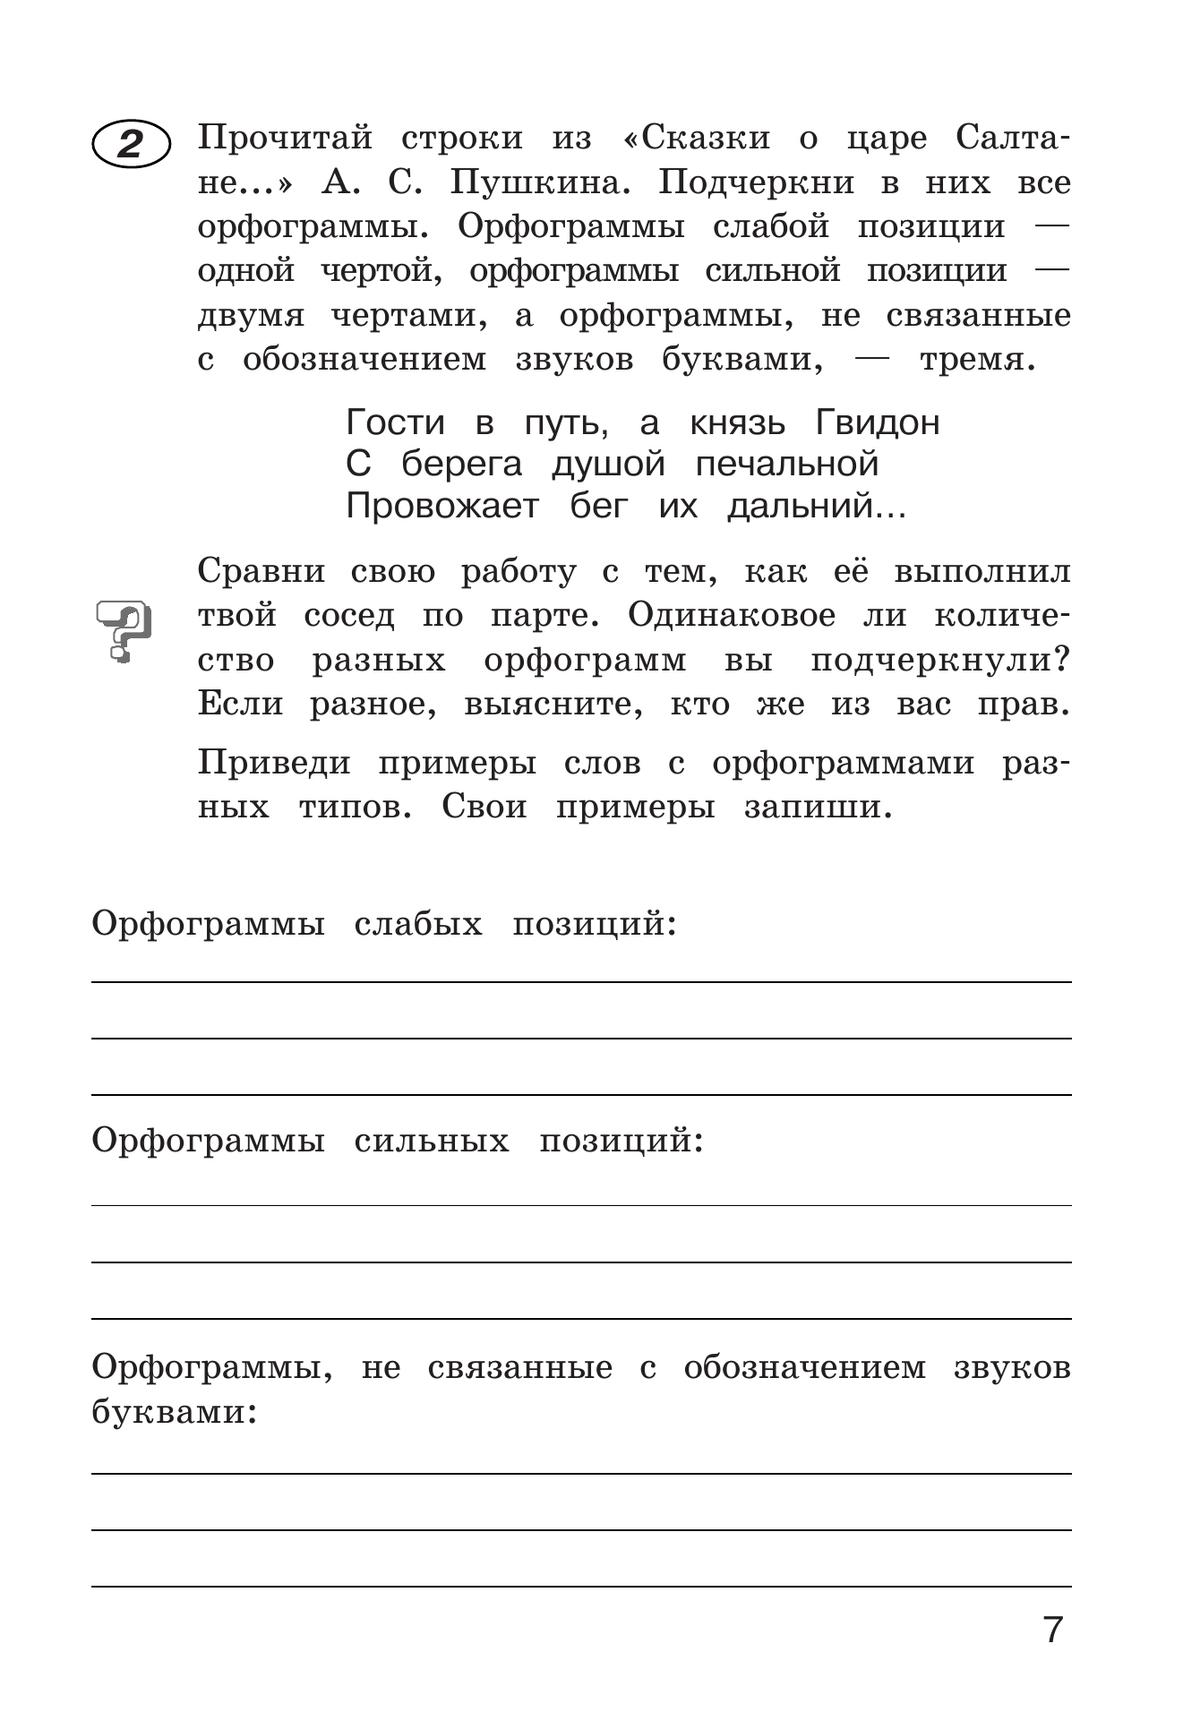 Рабочая тетрадь по русскому языку. 4 класс. В 2 частях. Часть 1 7